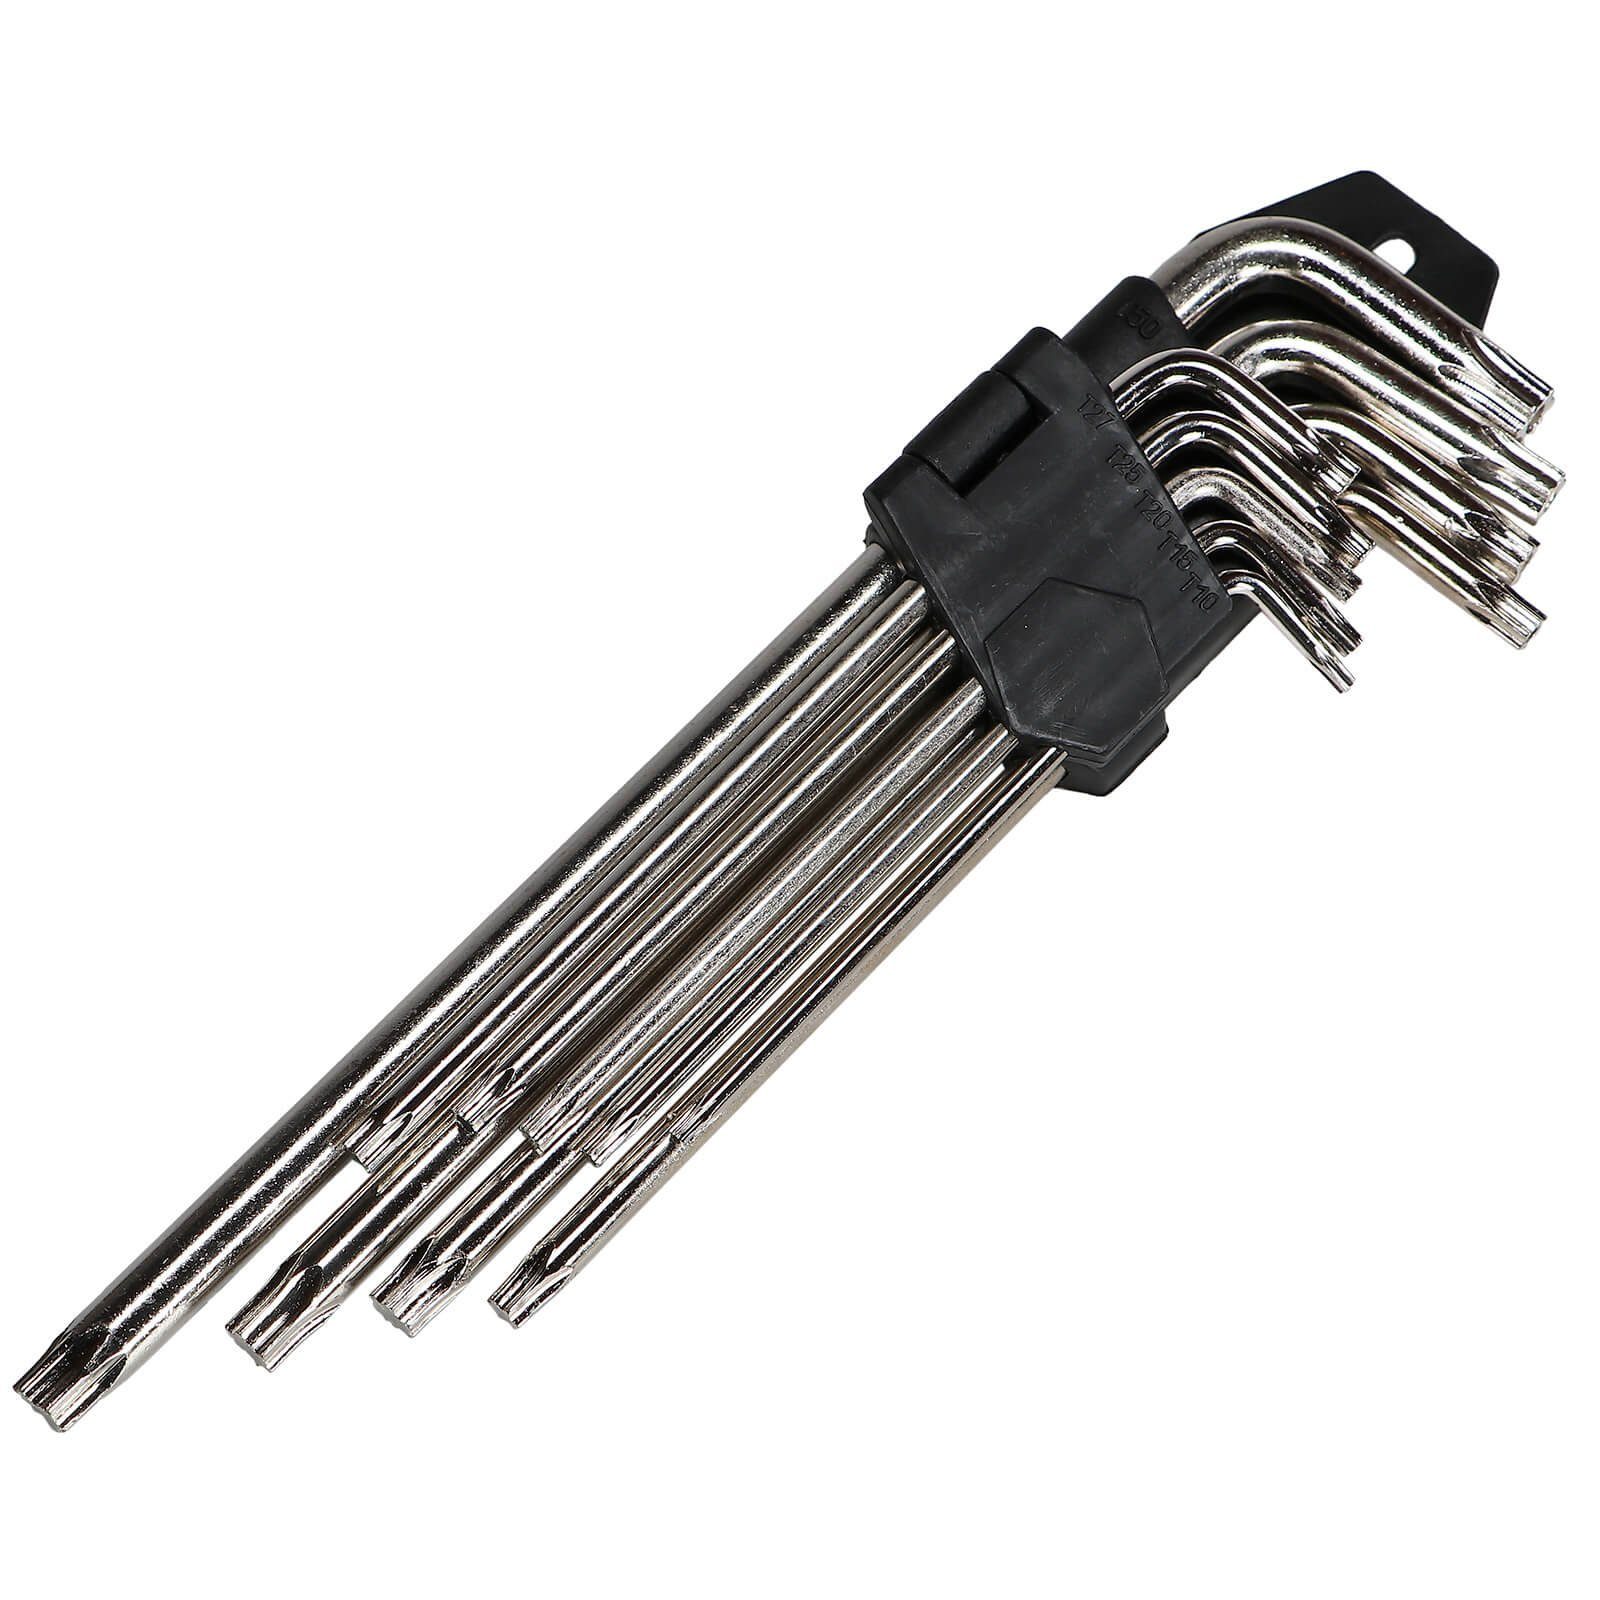 Winkelschlüssel Sechskant Stiftschlüssel teilig Beast und Torx Stiftschlüsselsatz 18